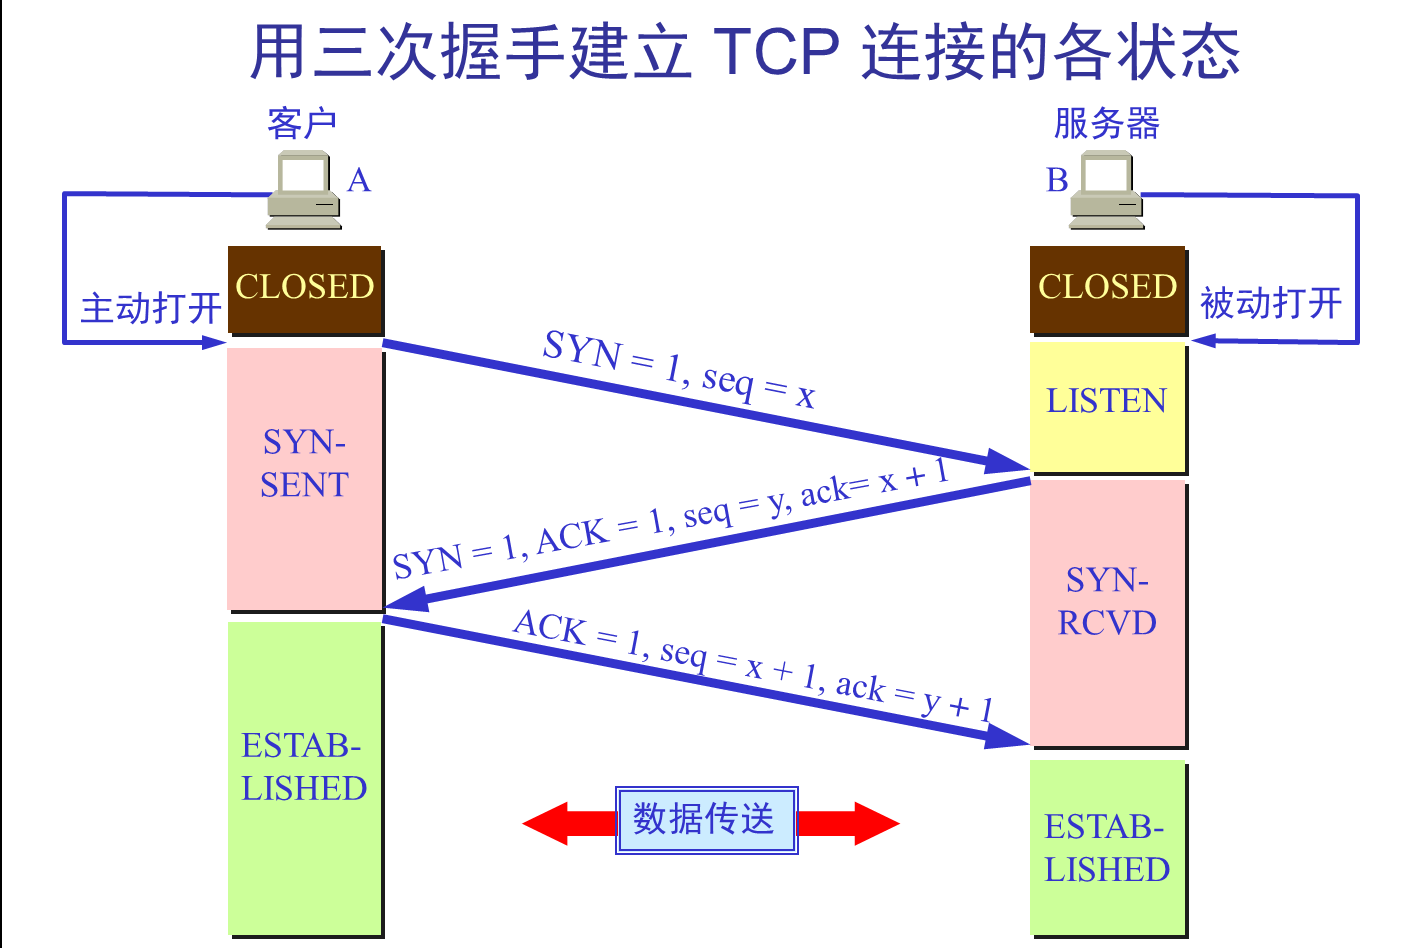 TCP three-way handshaking